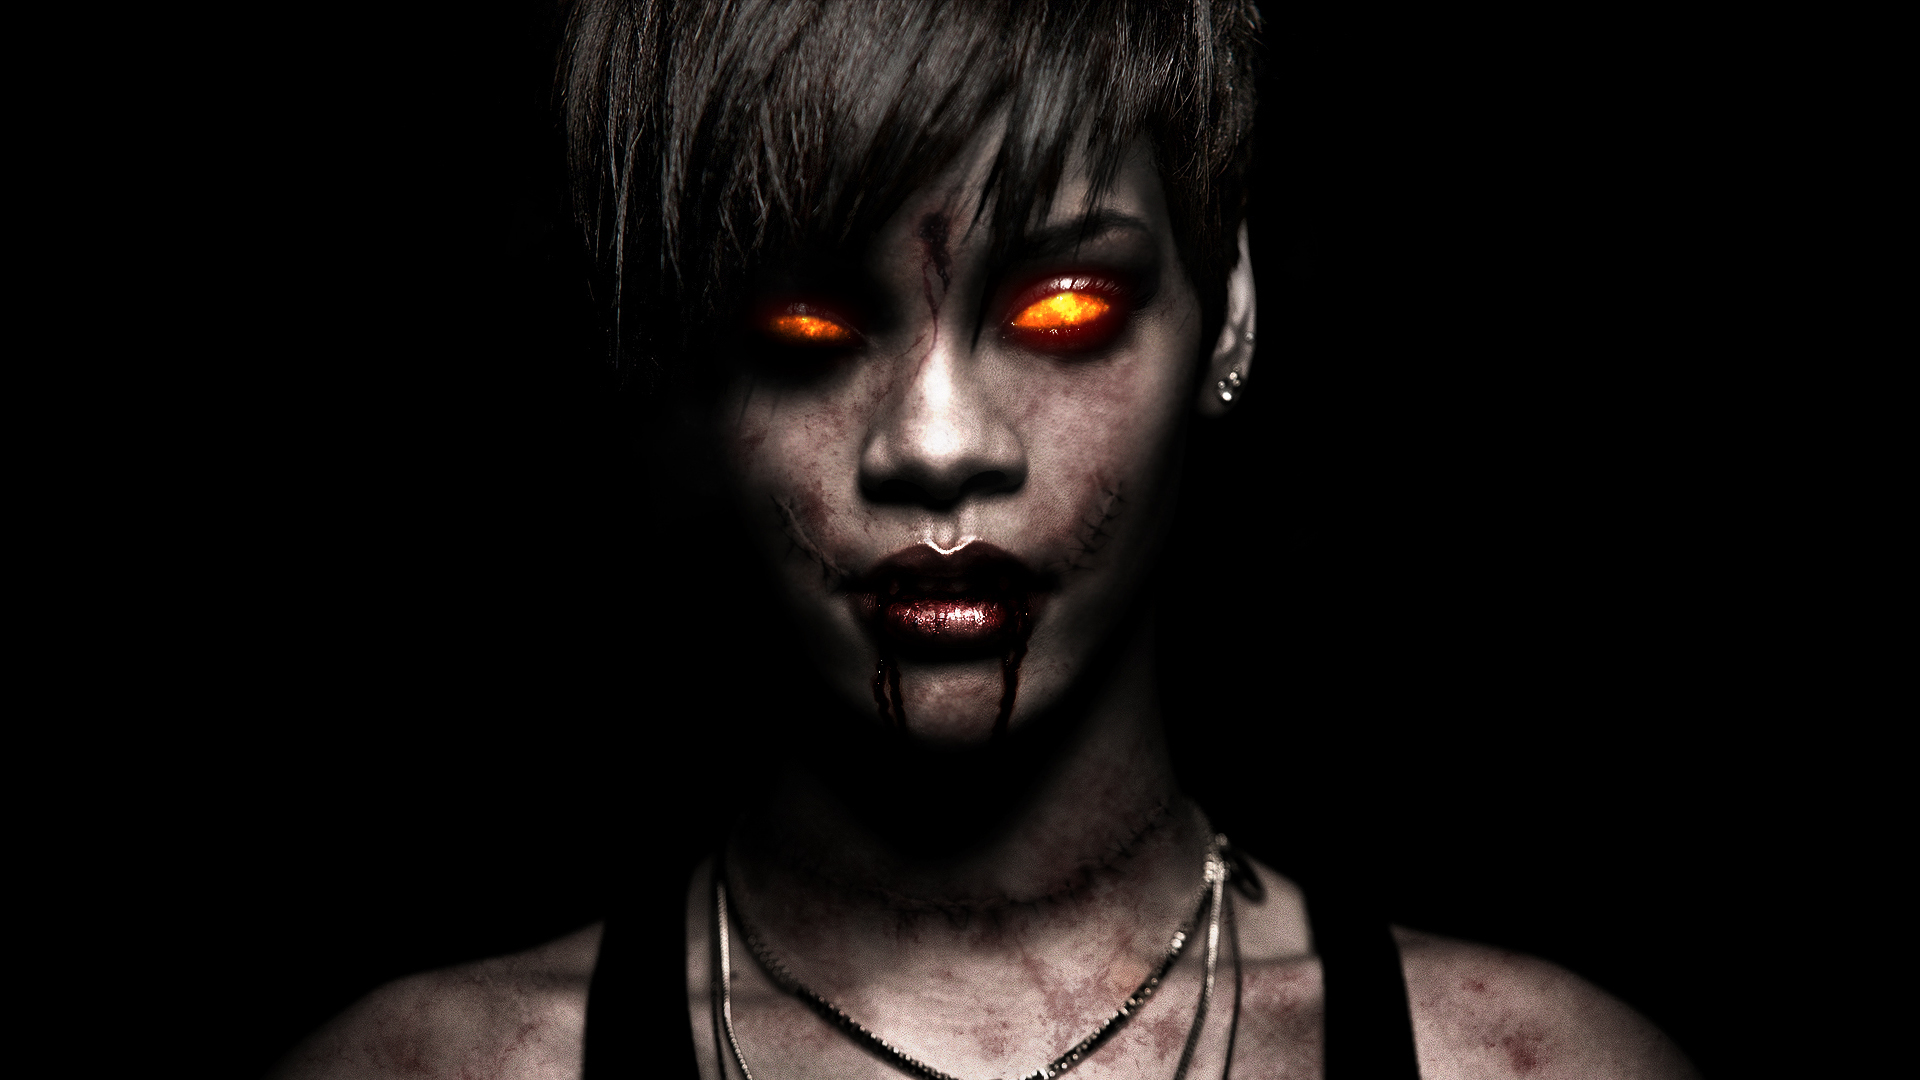 Zombie Demon Creepy Face Eyes Singer Musician Women Females Girls